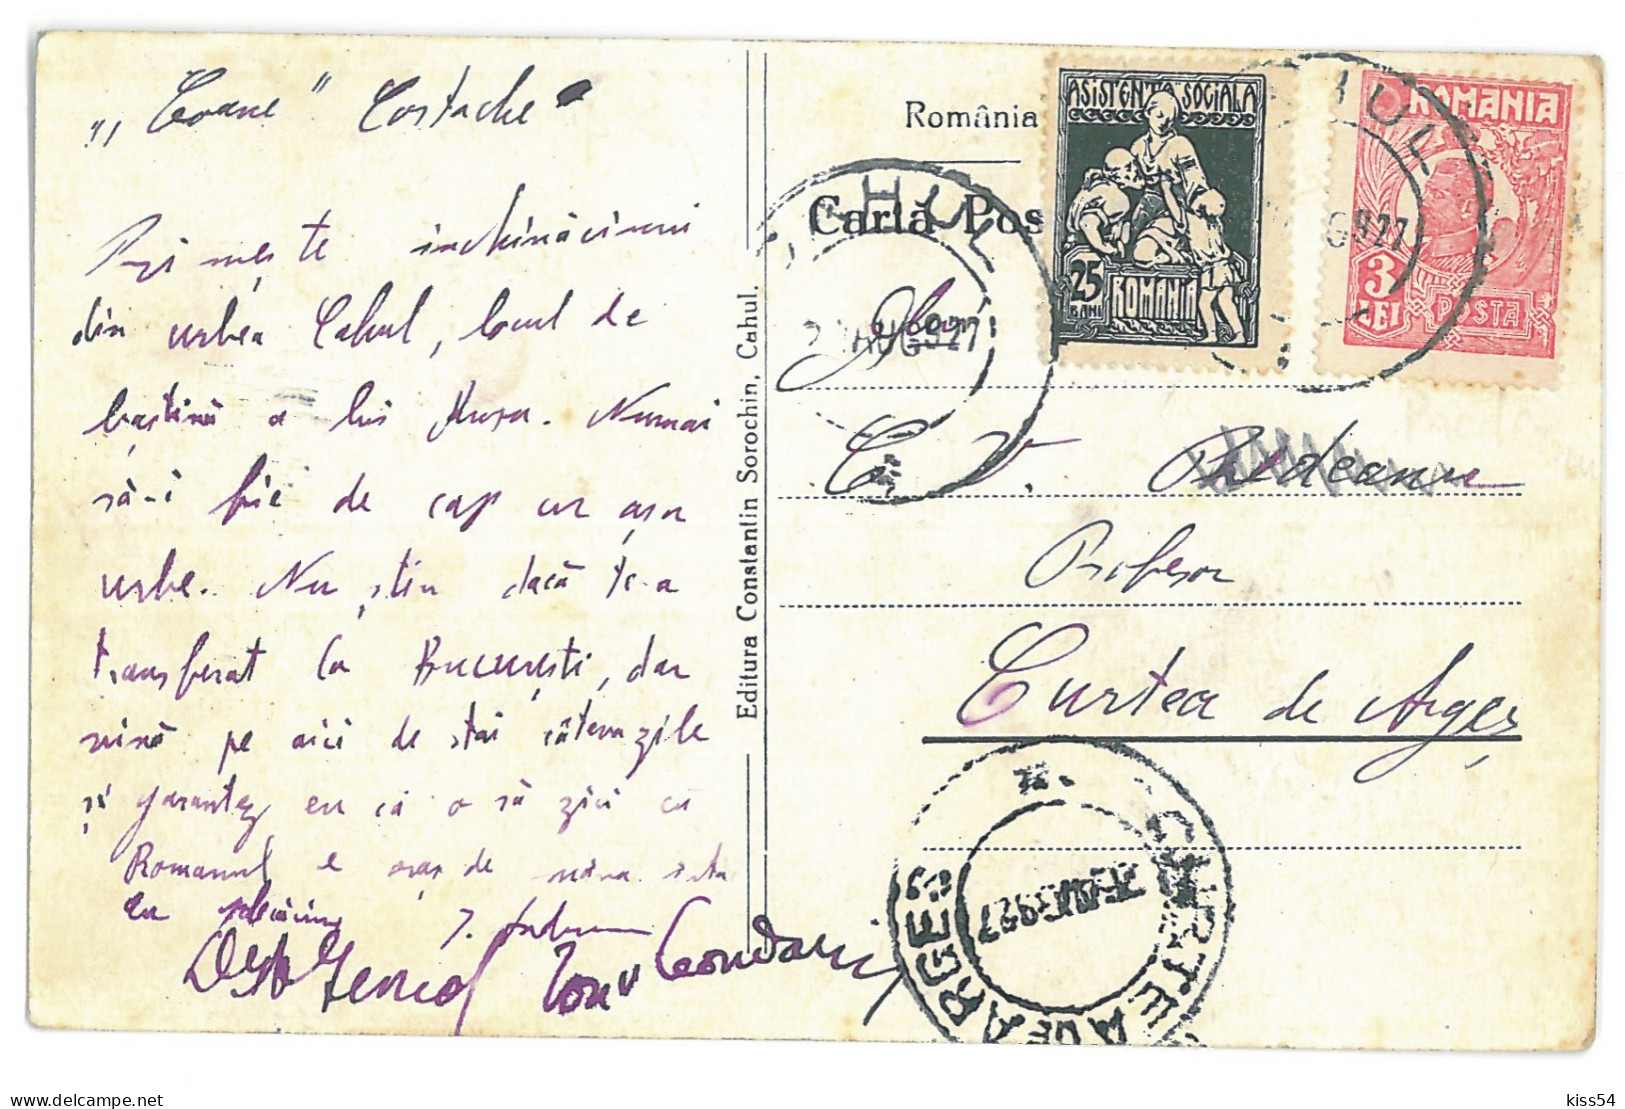 MOL 4 - 13918 KAHUL, Bessarabia, Moldova, High School Ion Voievod - Old Postcard - Used - 1927 - Moldova